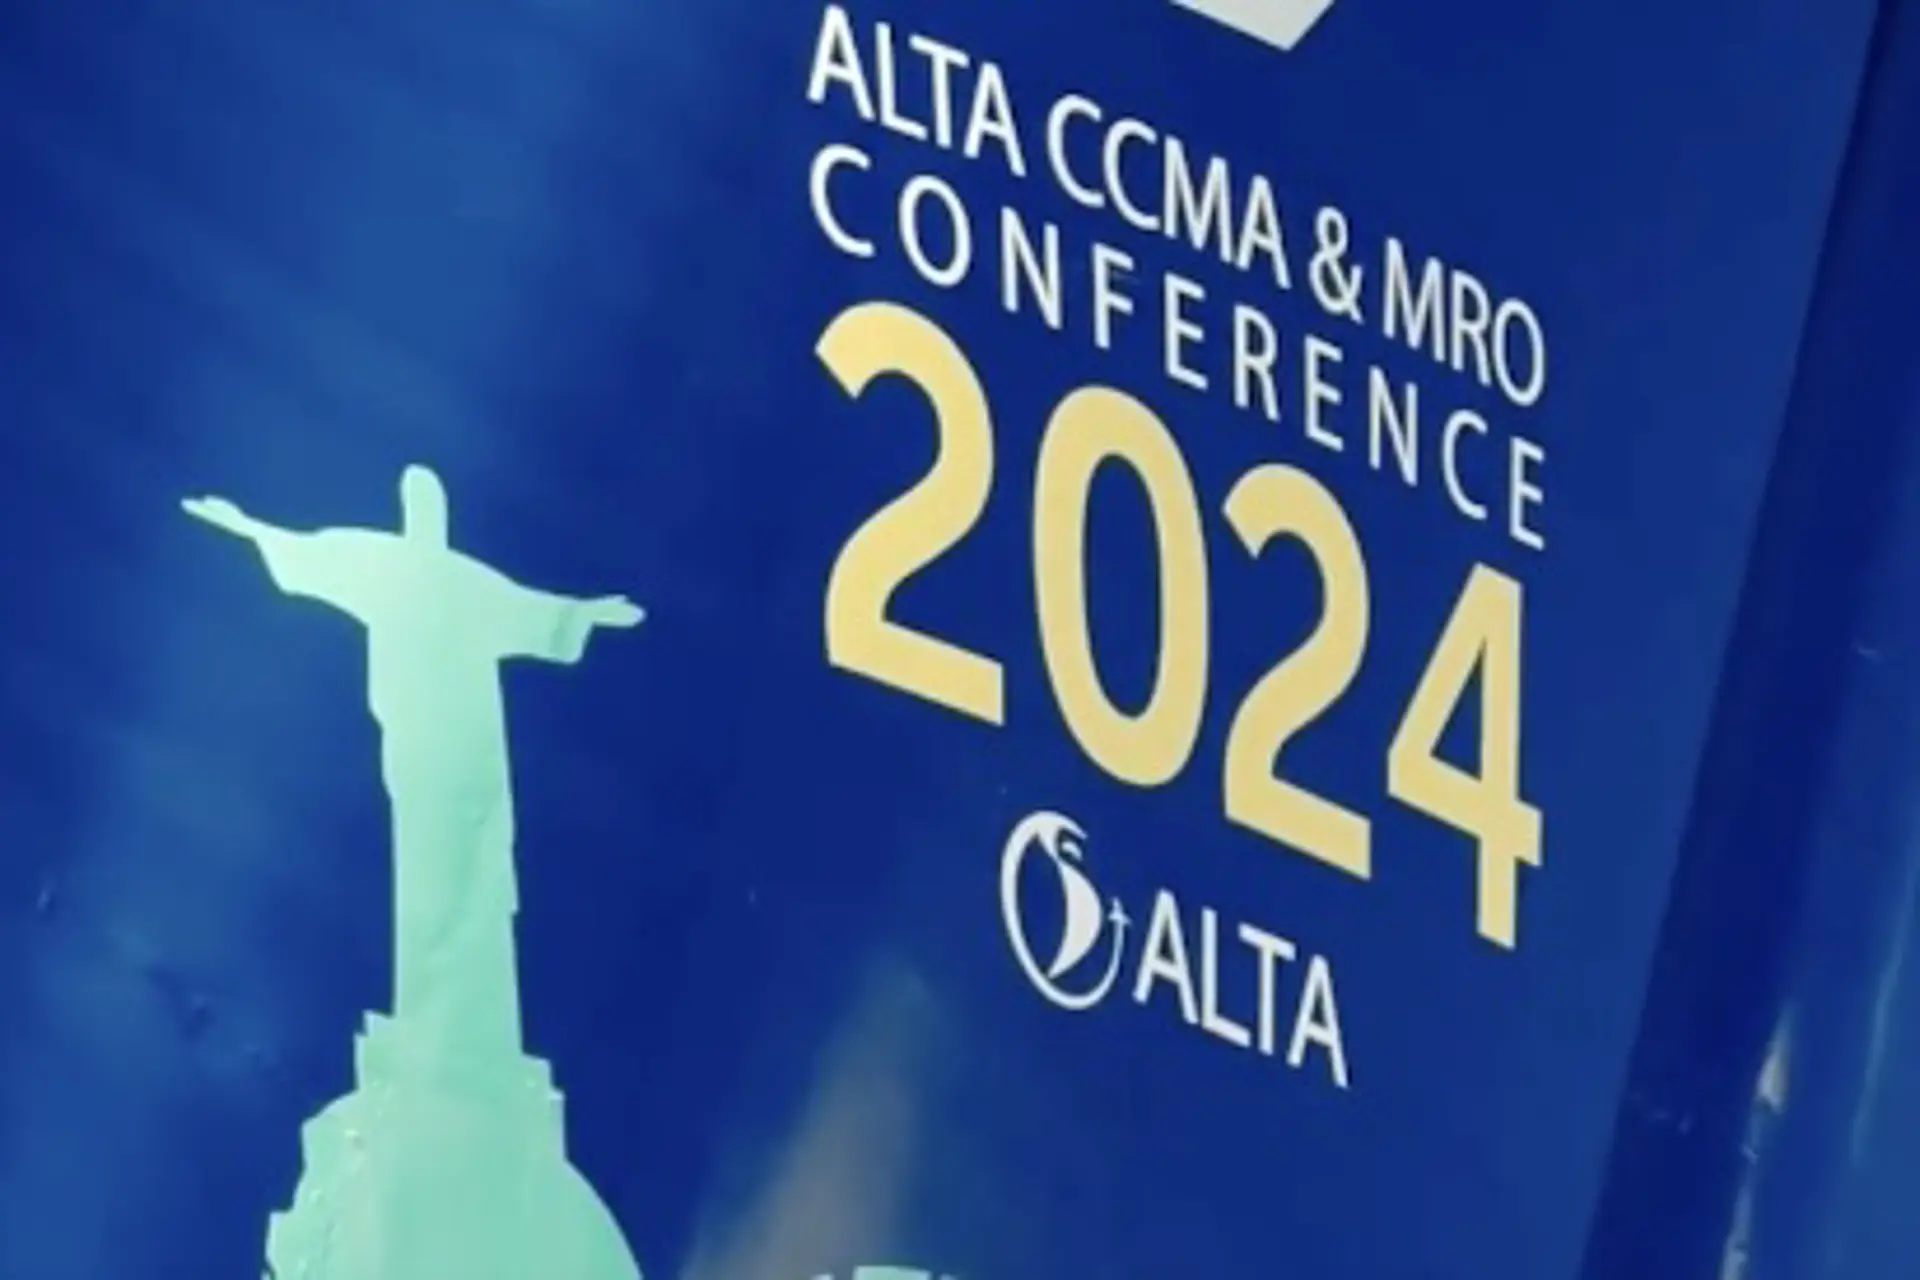 ALTA y Voepass llevan la conferencia ALTA CCMA & MRO 2024 a la altura